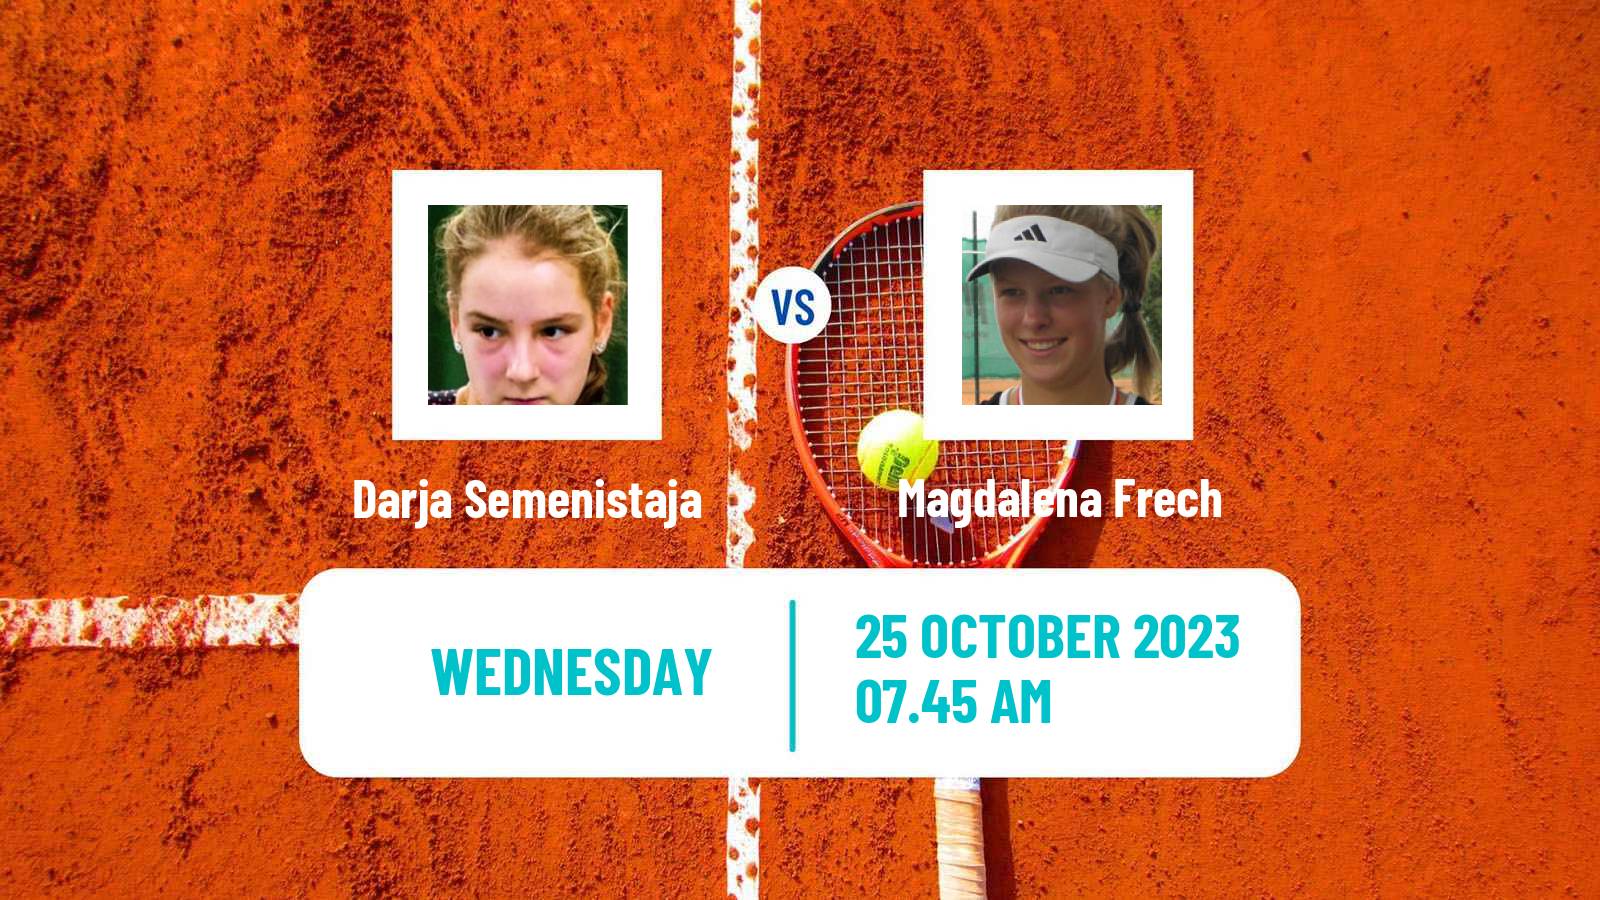 Tennis ITF W100 Les Franqueses Del Valles Women Darja Semenistaja - Magdalena Frech